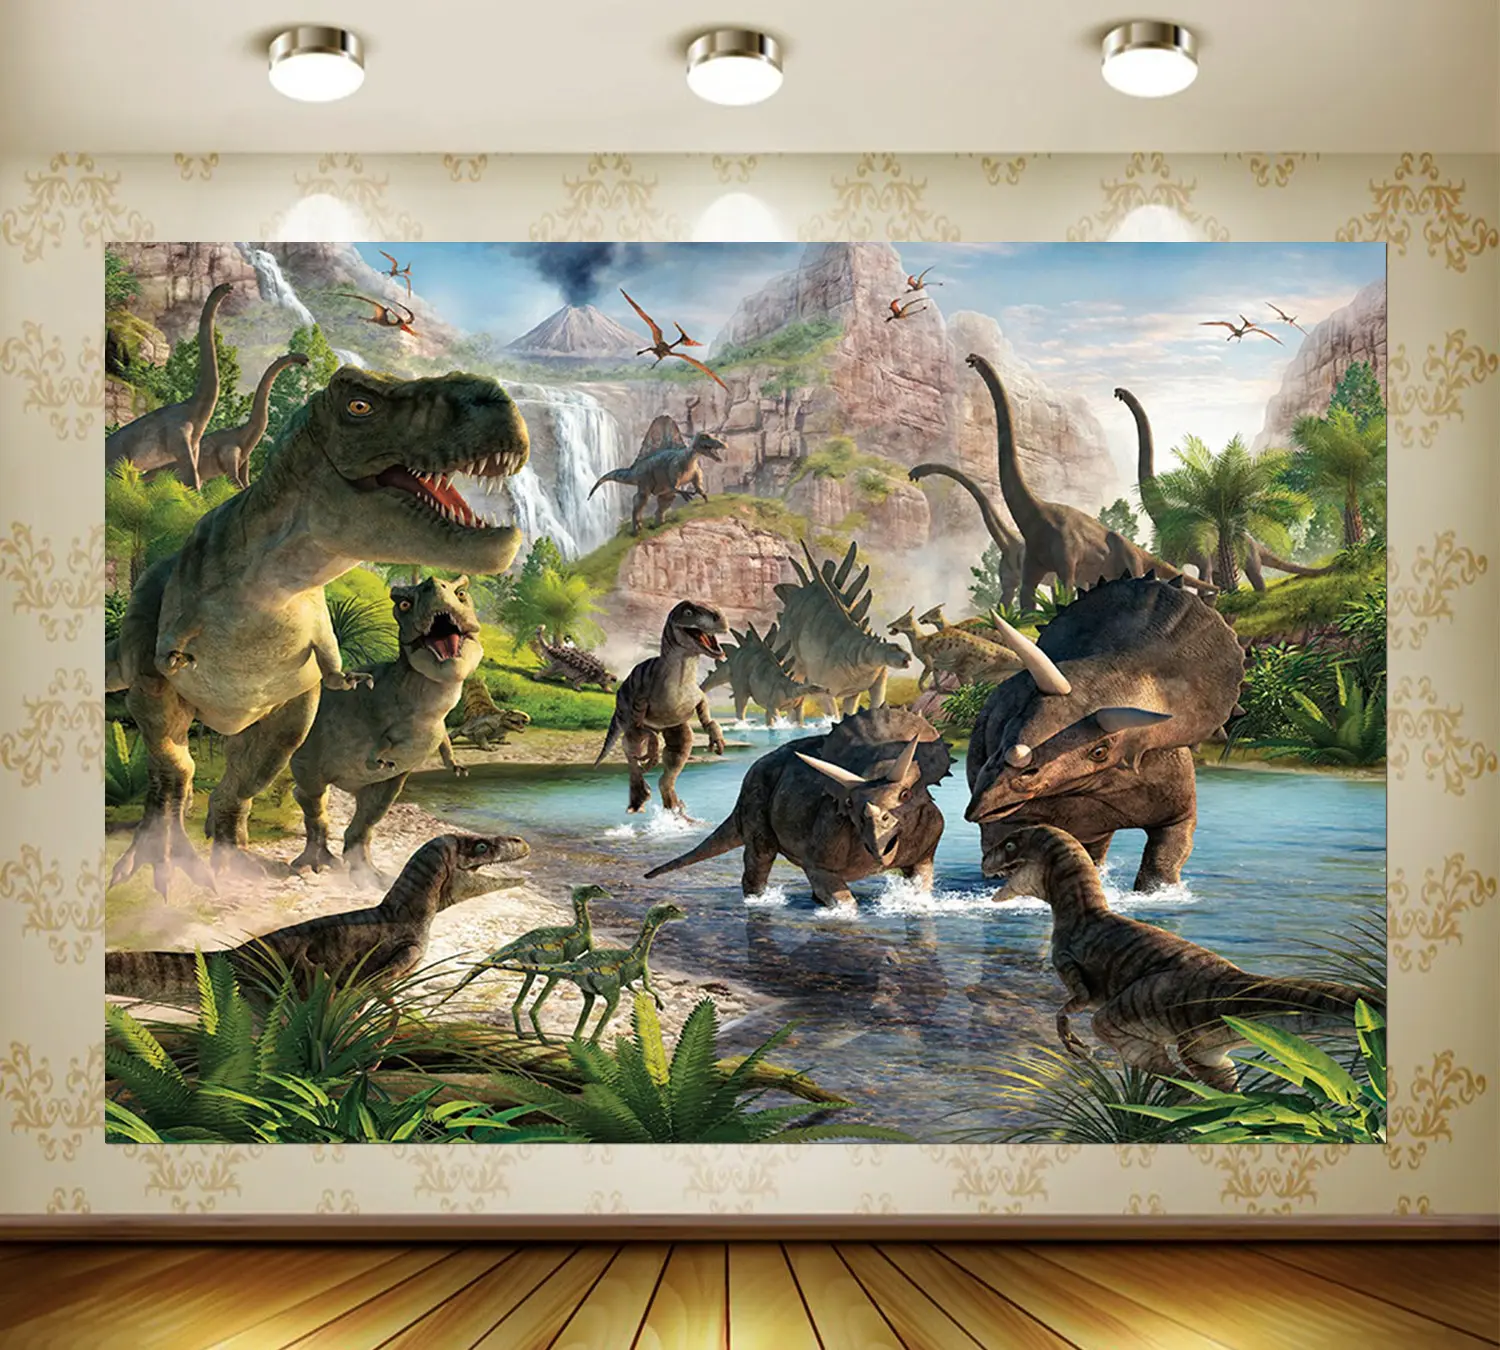 Studio fotografi latar belakang Dunia Jurassic untuk dekorasi pesta dinosaurus latar belakang foto kustom anak laki-laki ulang tahun